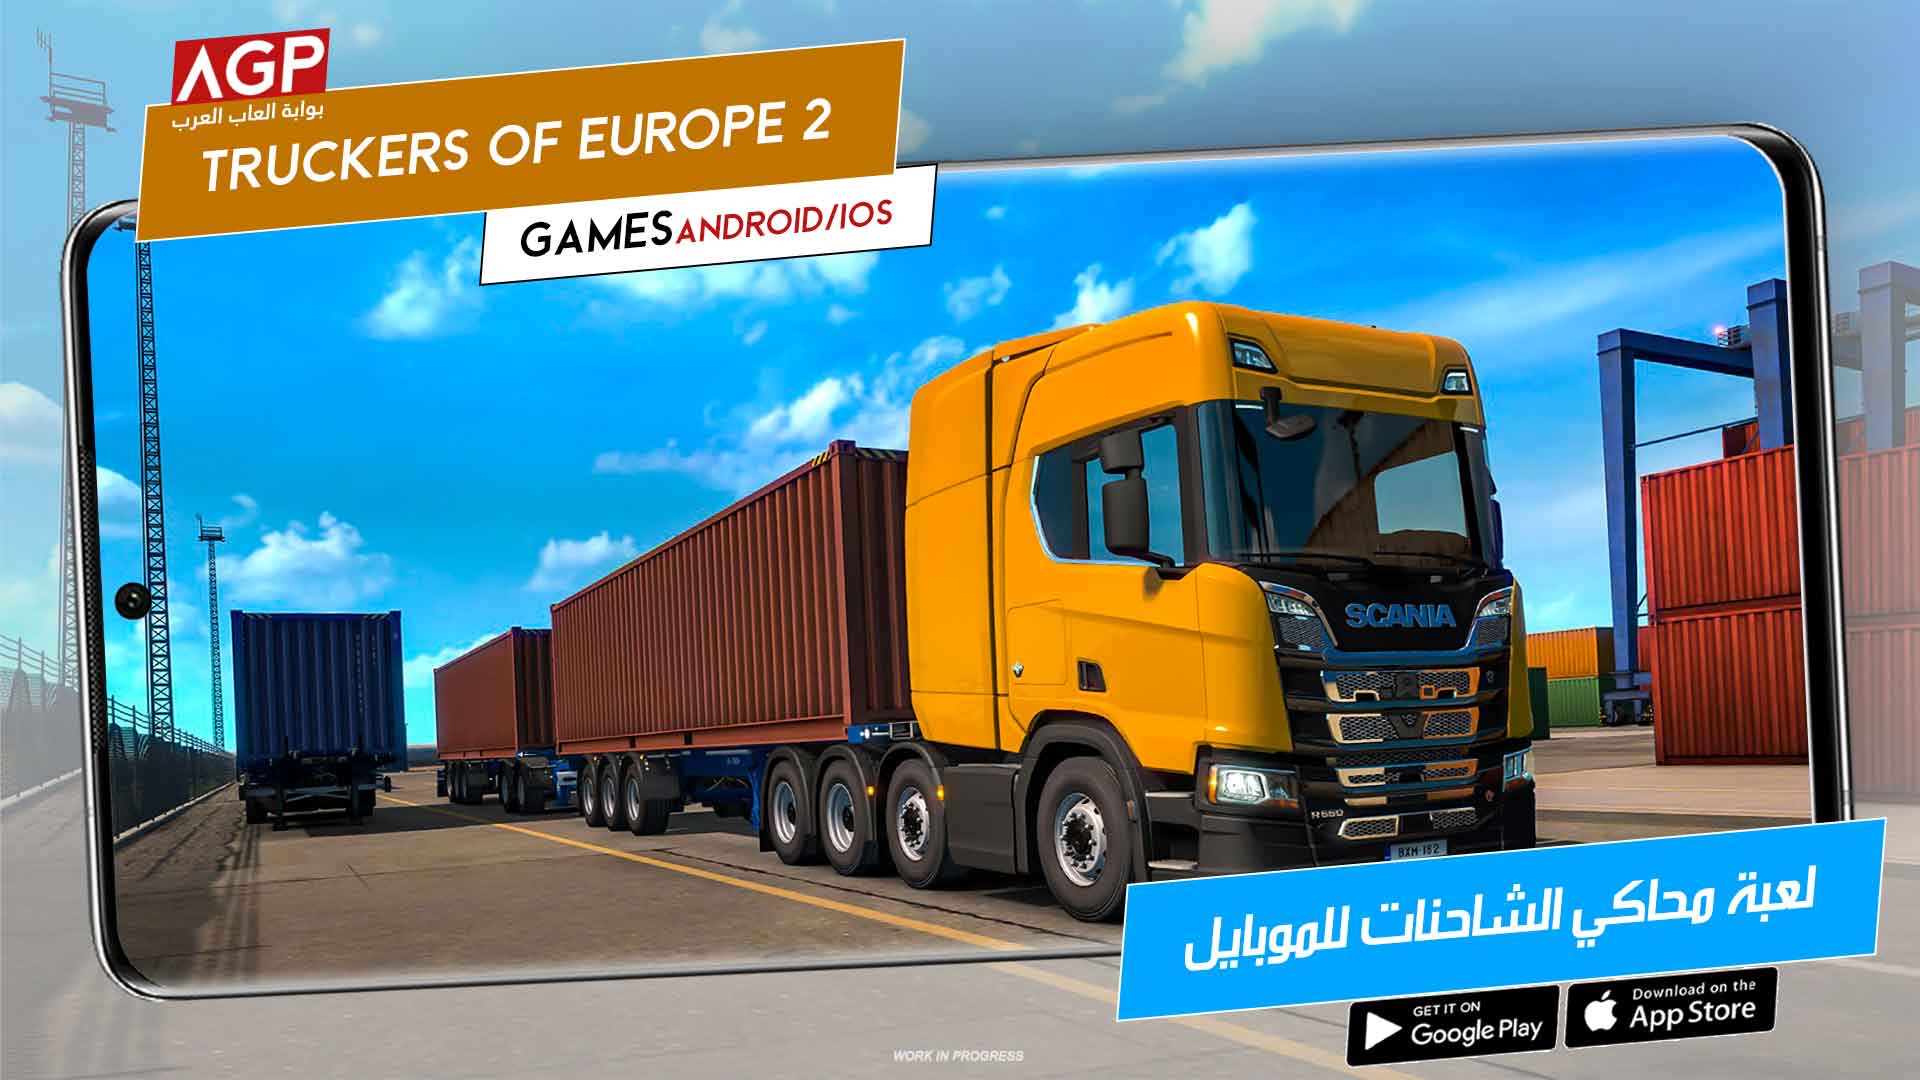 لعبة محاكي الشاحنات Truckers of Europe 2 للموبايل